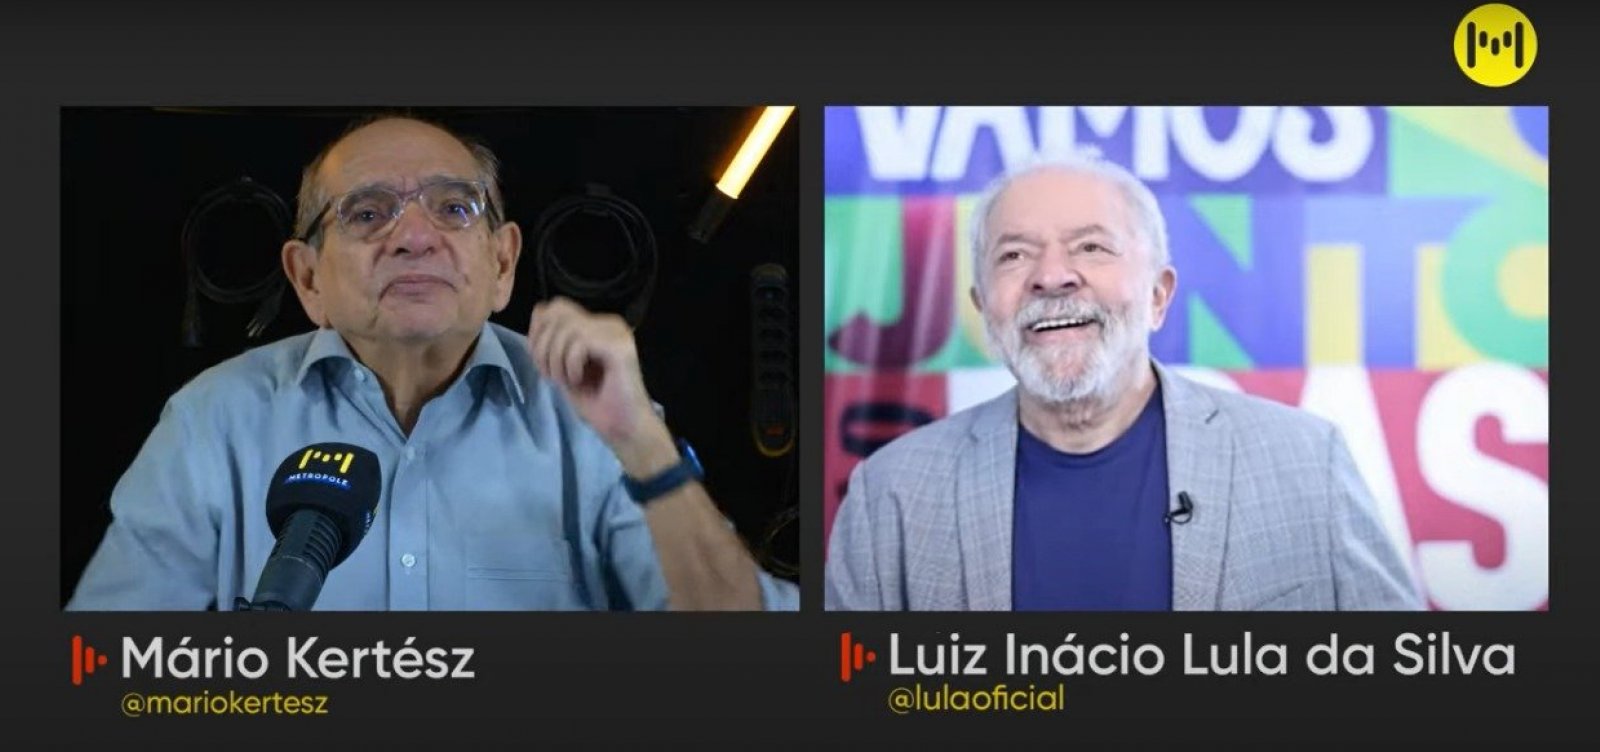 Lula deixa a entender que não disputará reeleição, caso eleito em outubro: "Só terei quatro anos"